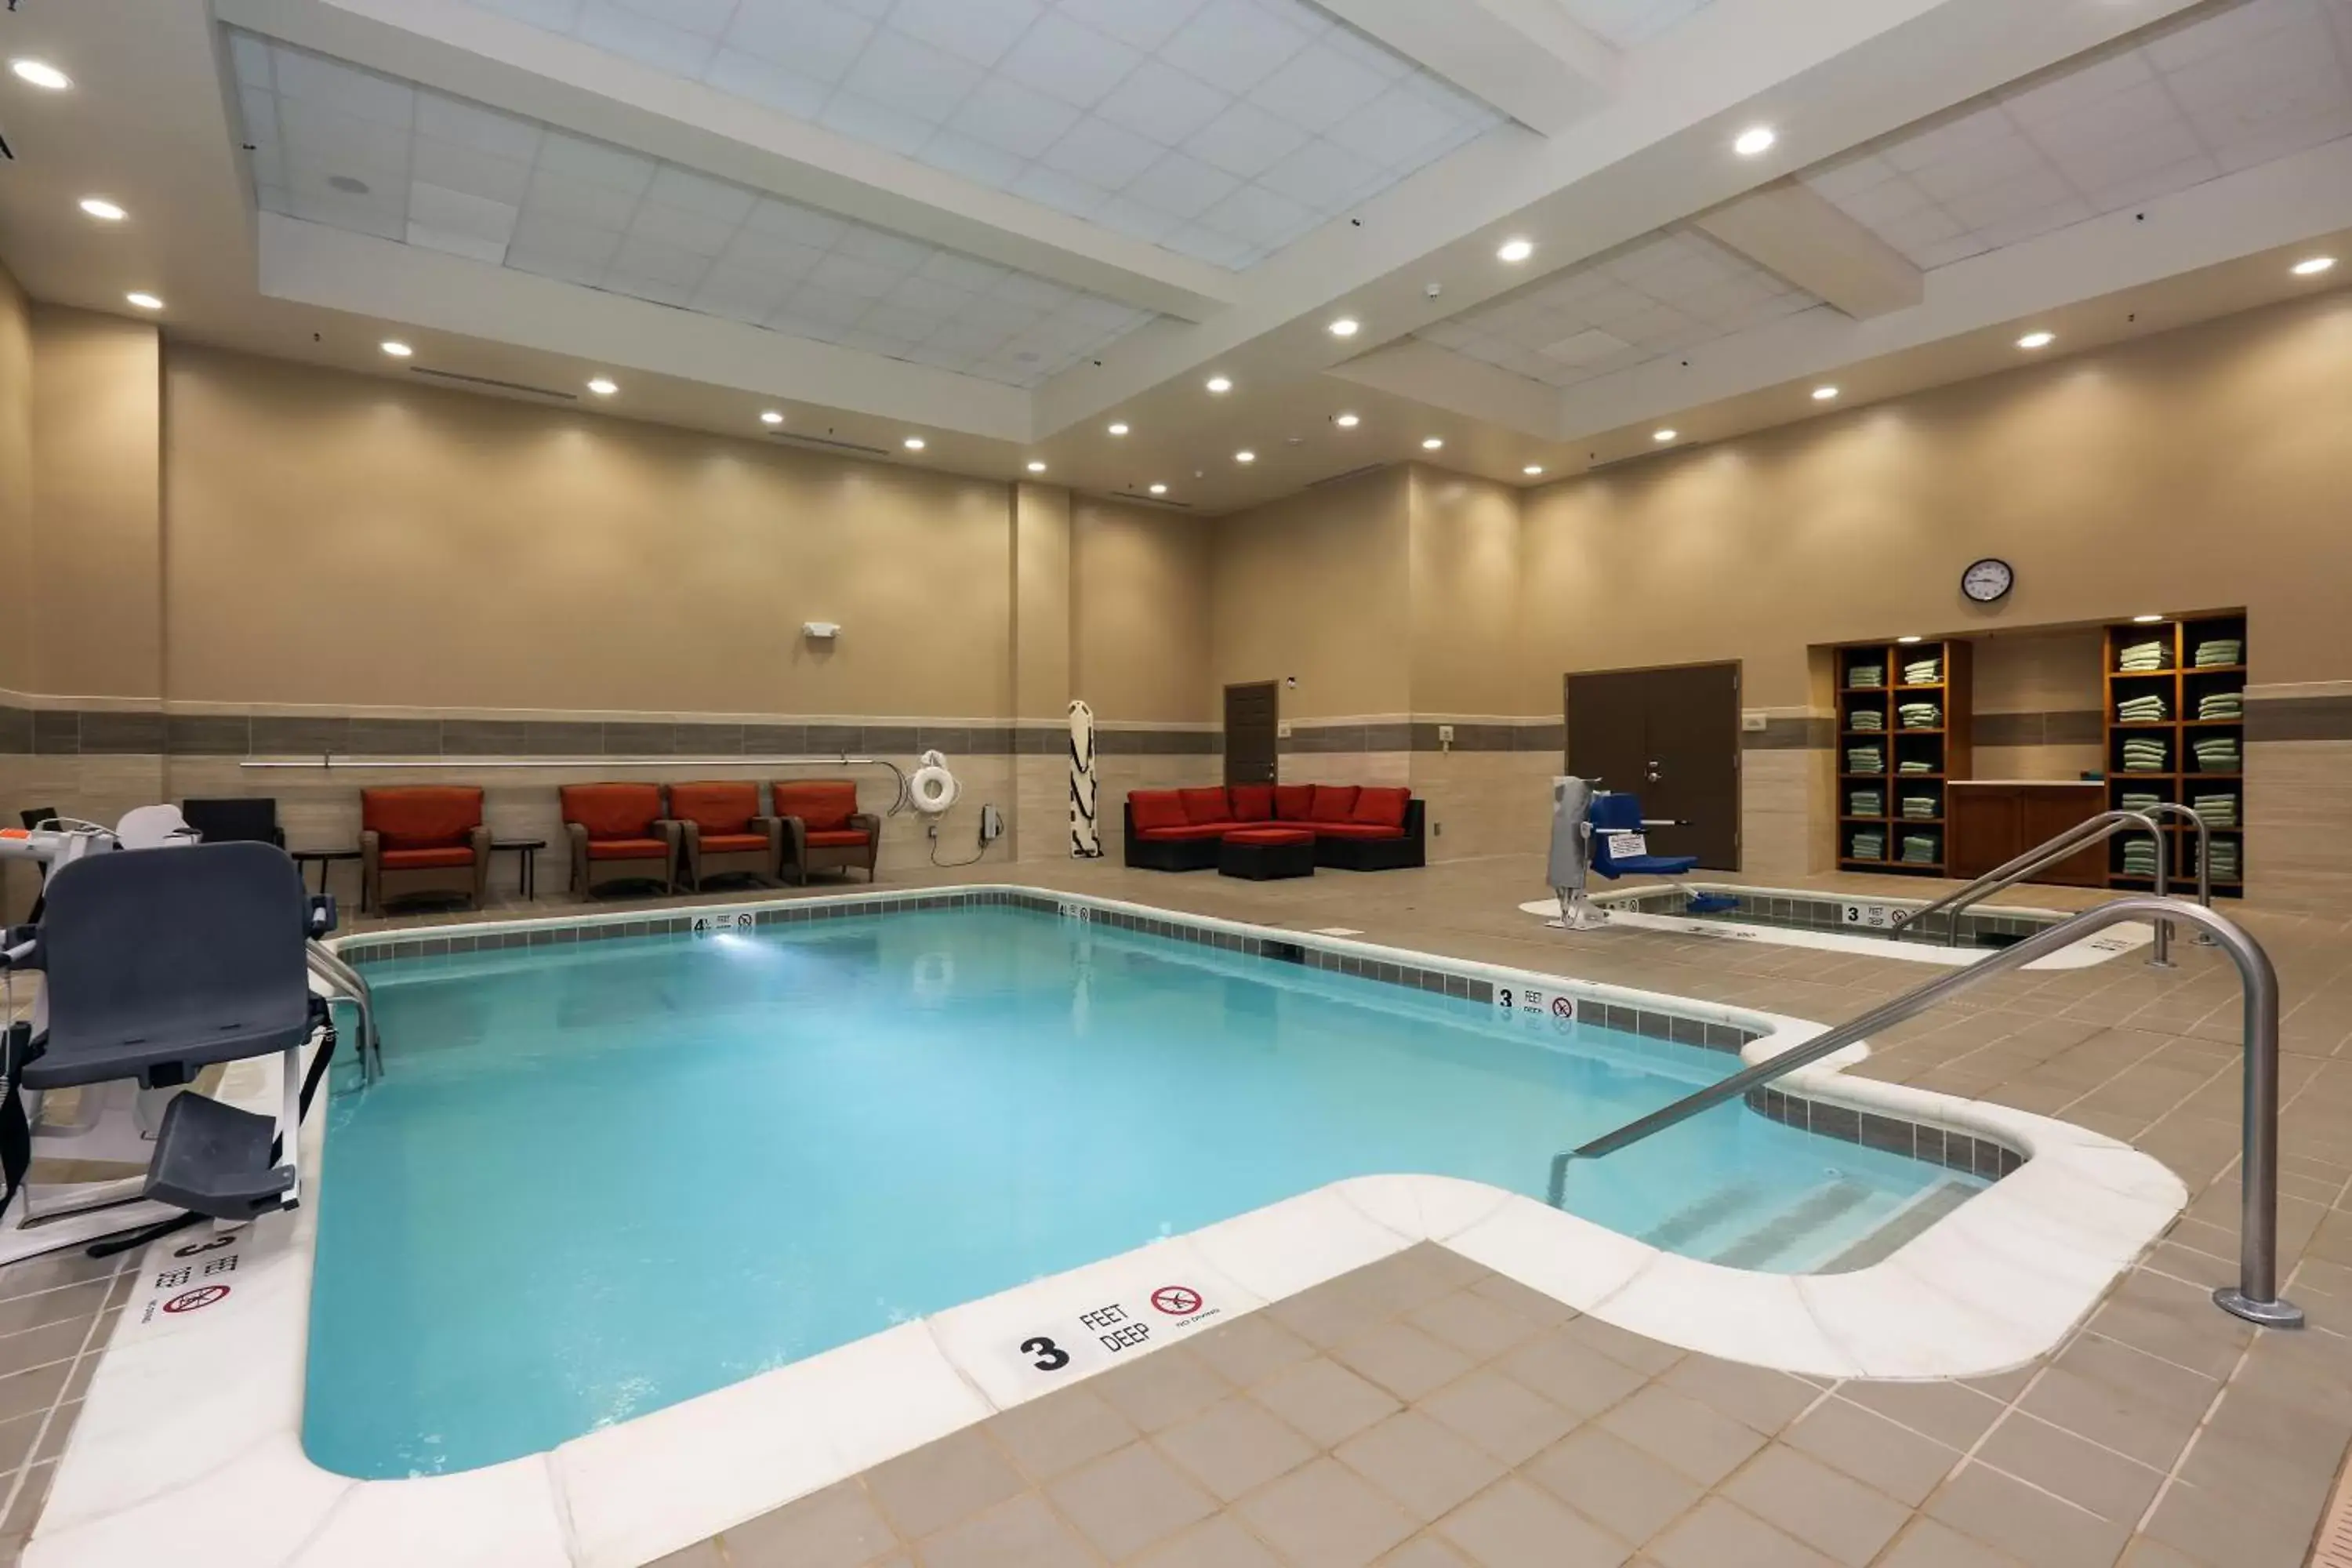 Swimming Pool in Hilton Garden Inn Clifton Park